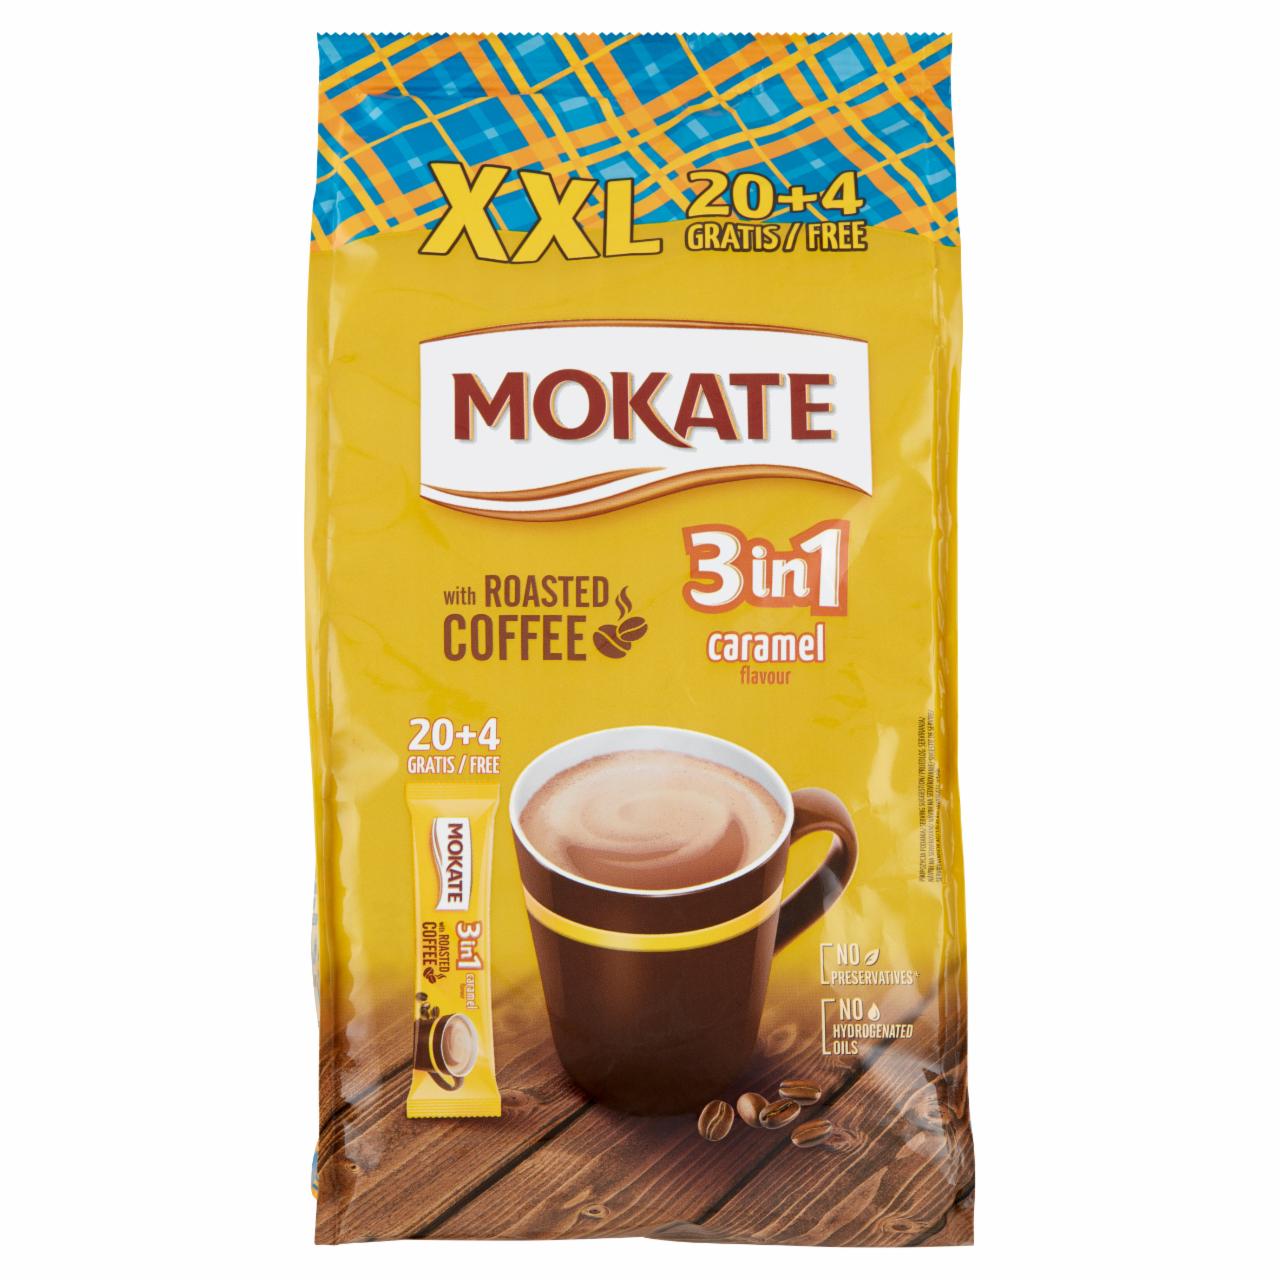 Képek - Mokate 3in1 azonnal oldódó kávéspecialitás karamell ízesítéssel 24 x 17 g (408 g)